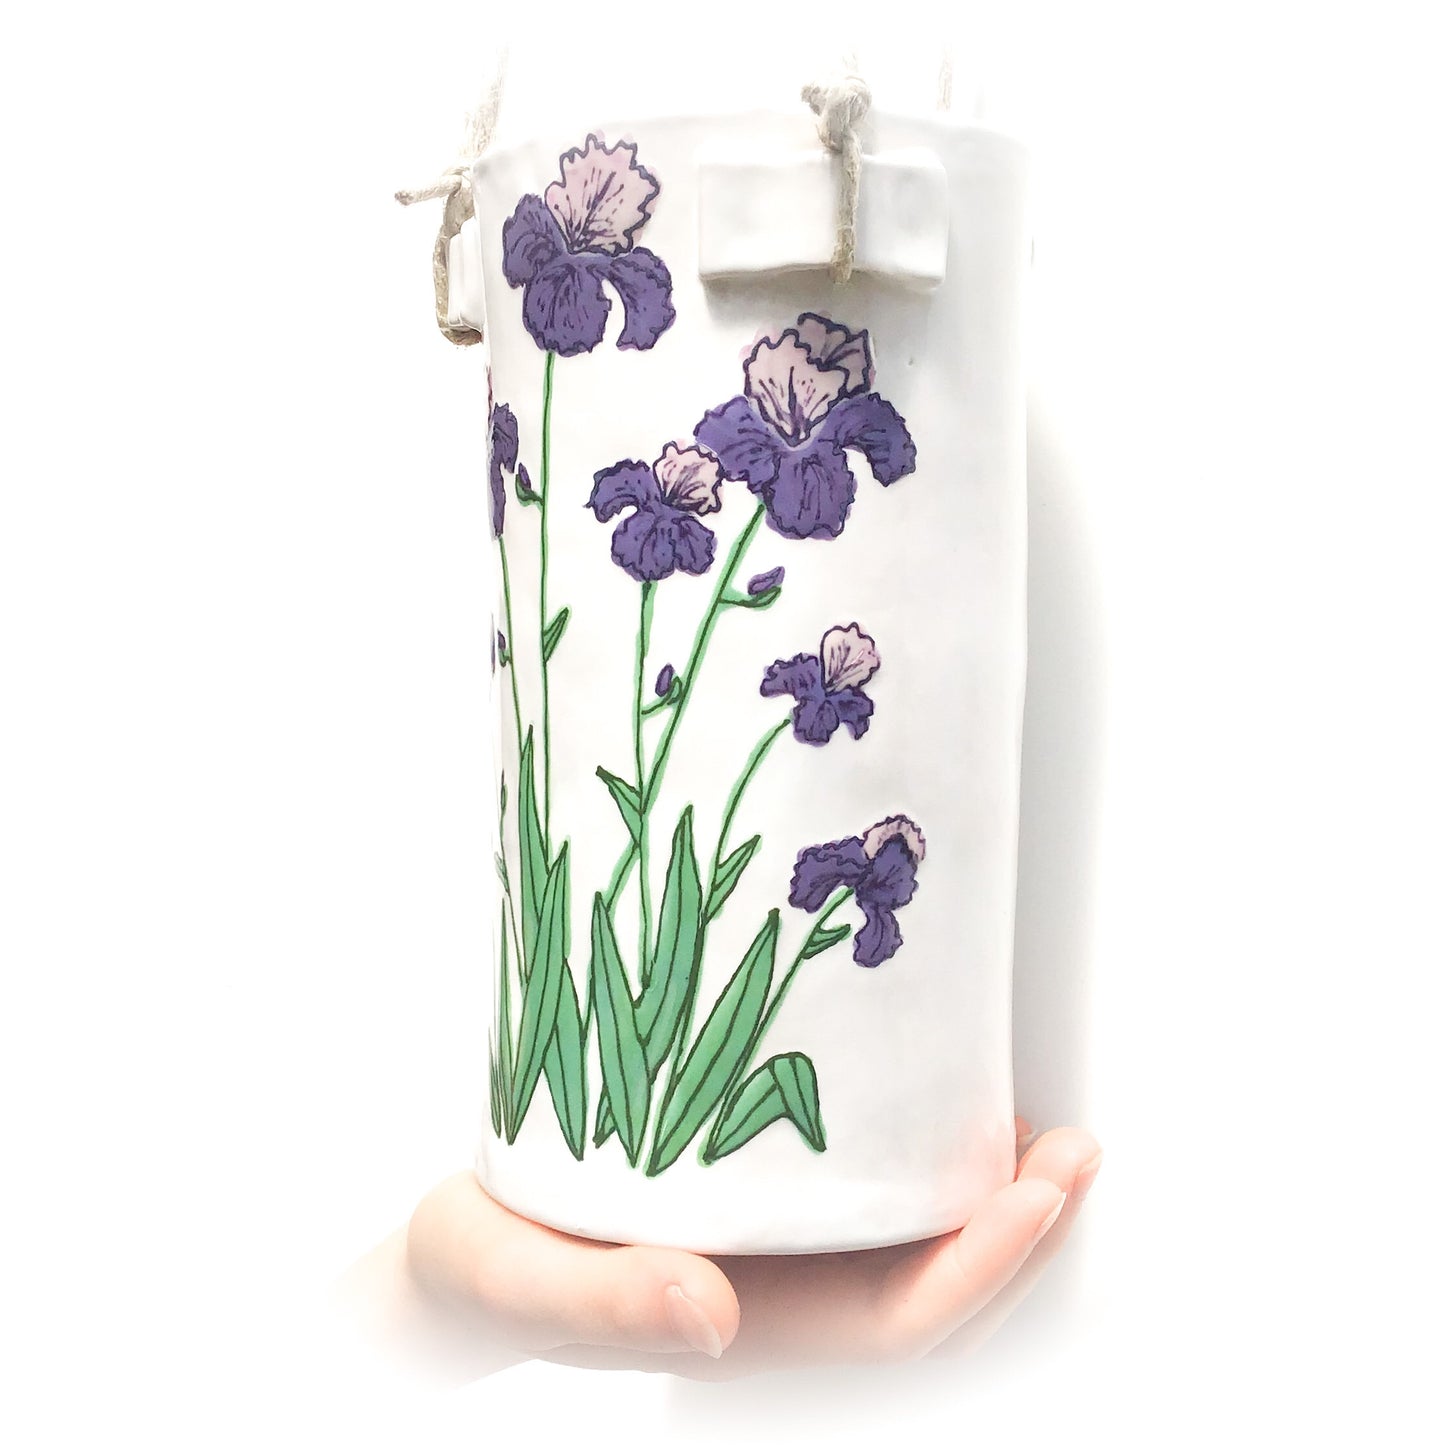 Flowering Purple Iris Hanging Ceramic Pot - Hanging Clay Flower Planter